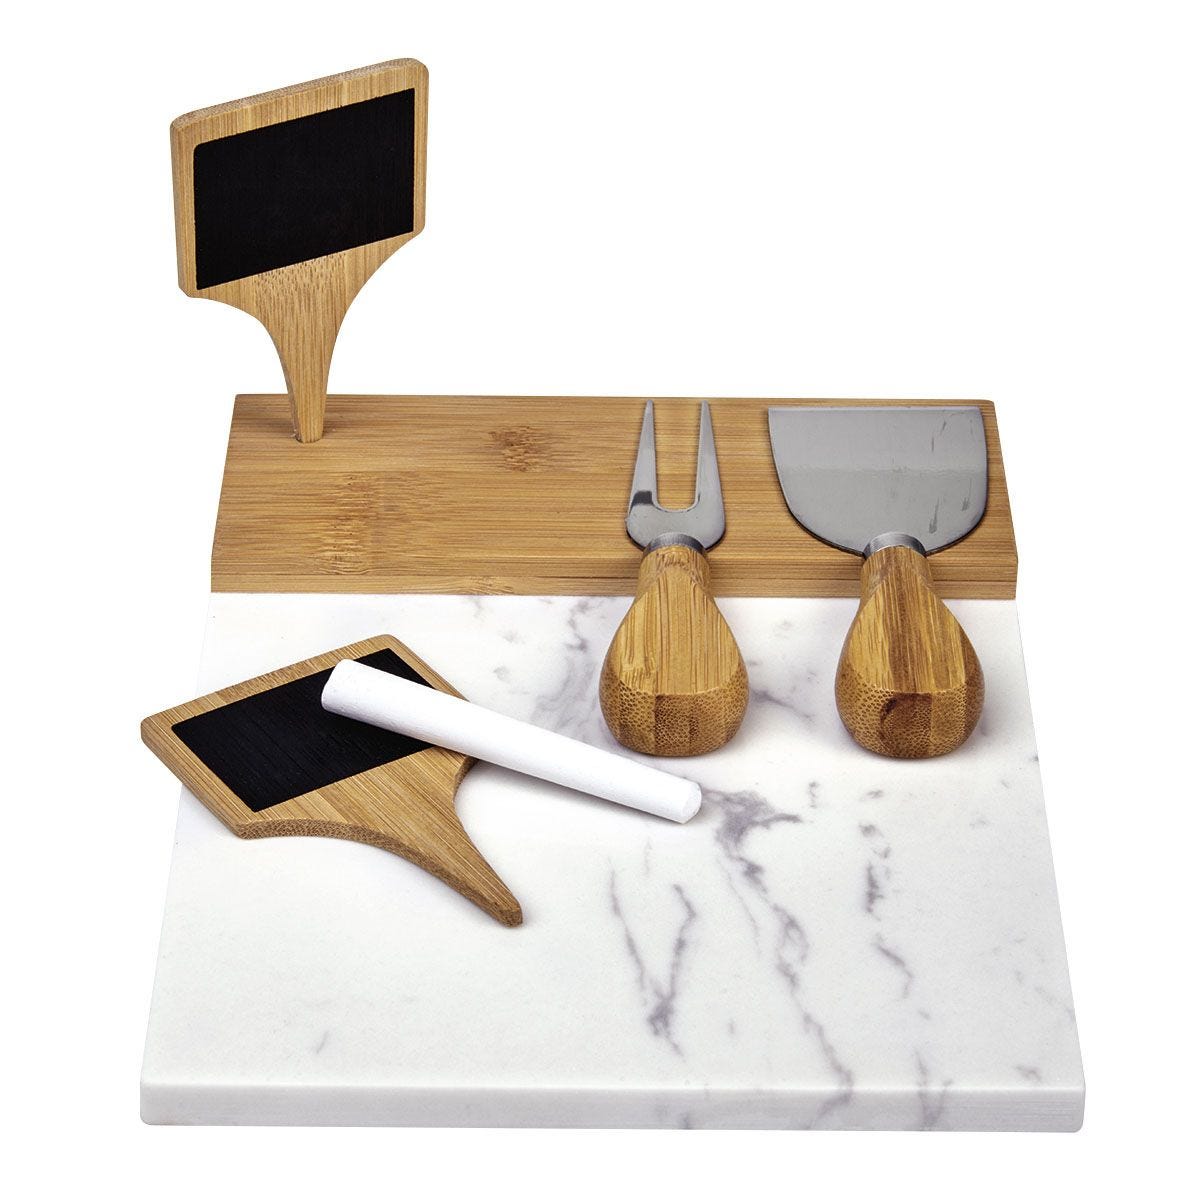 PWT210, Tabla de mármol con bambú. Incluye cuchillo y tenedor para quesos, dos banderines para escribir y un gis en color blanco,